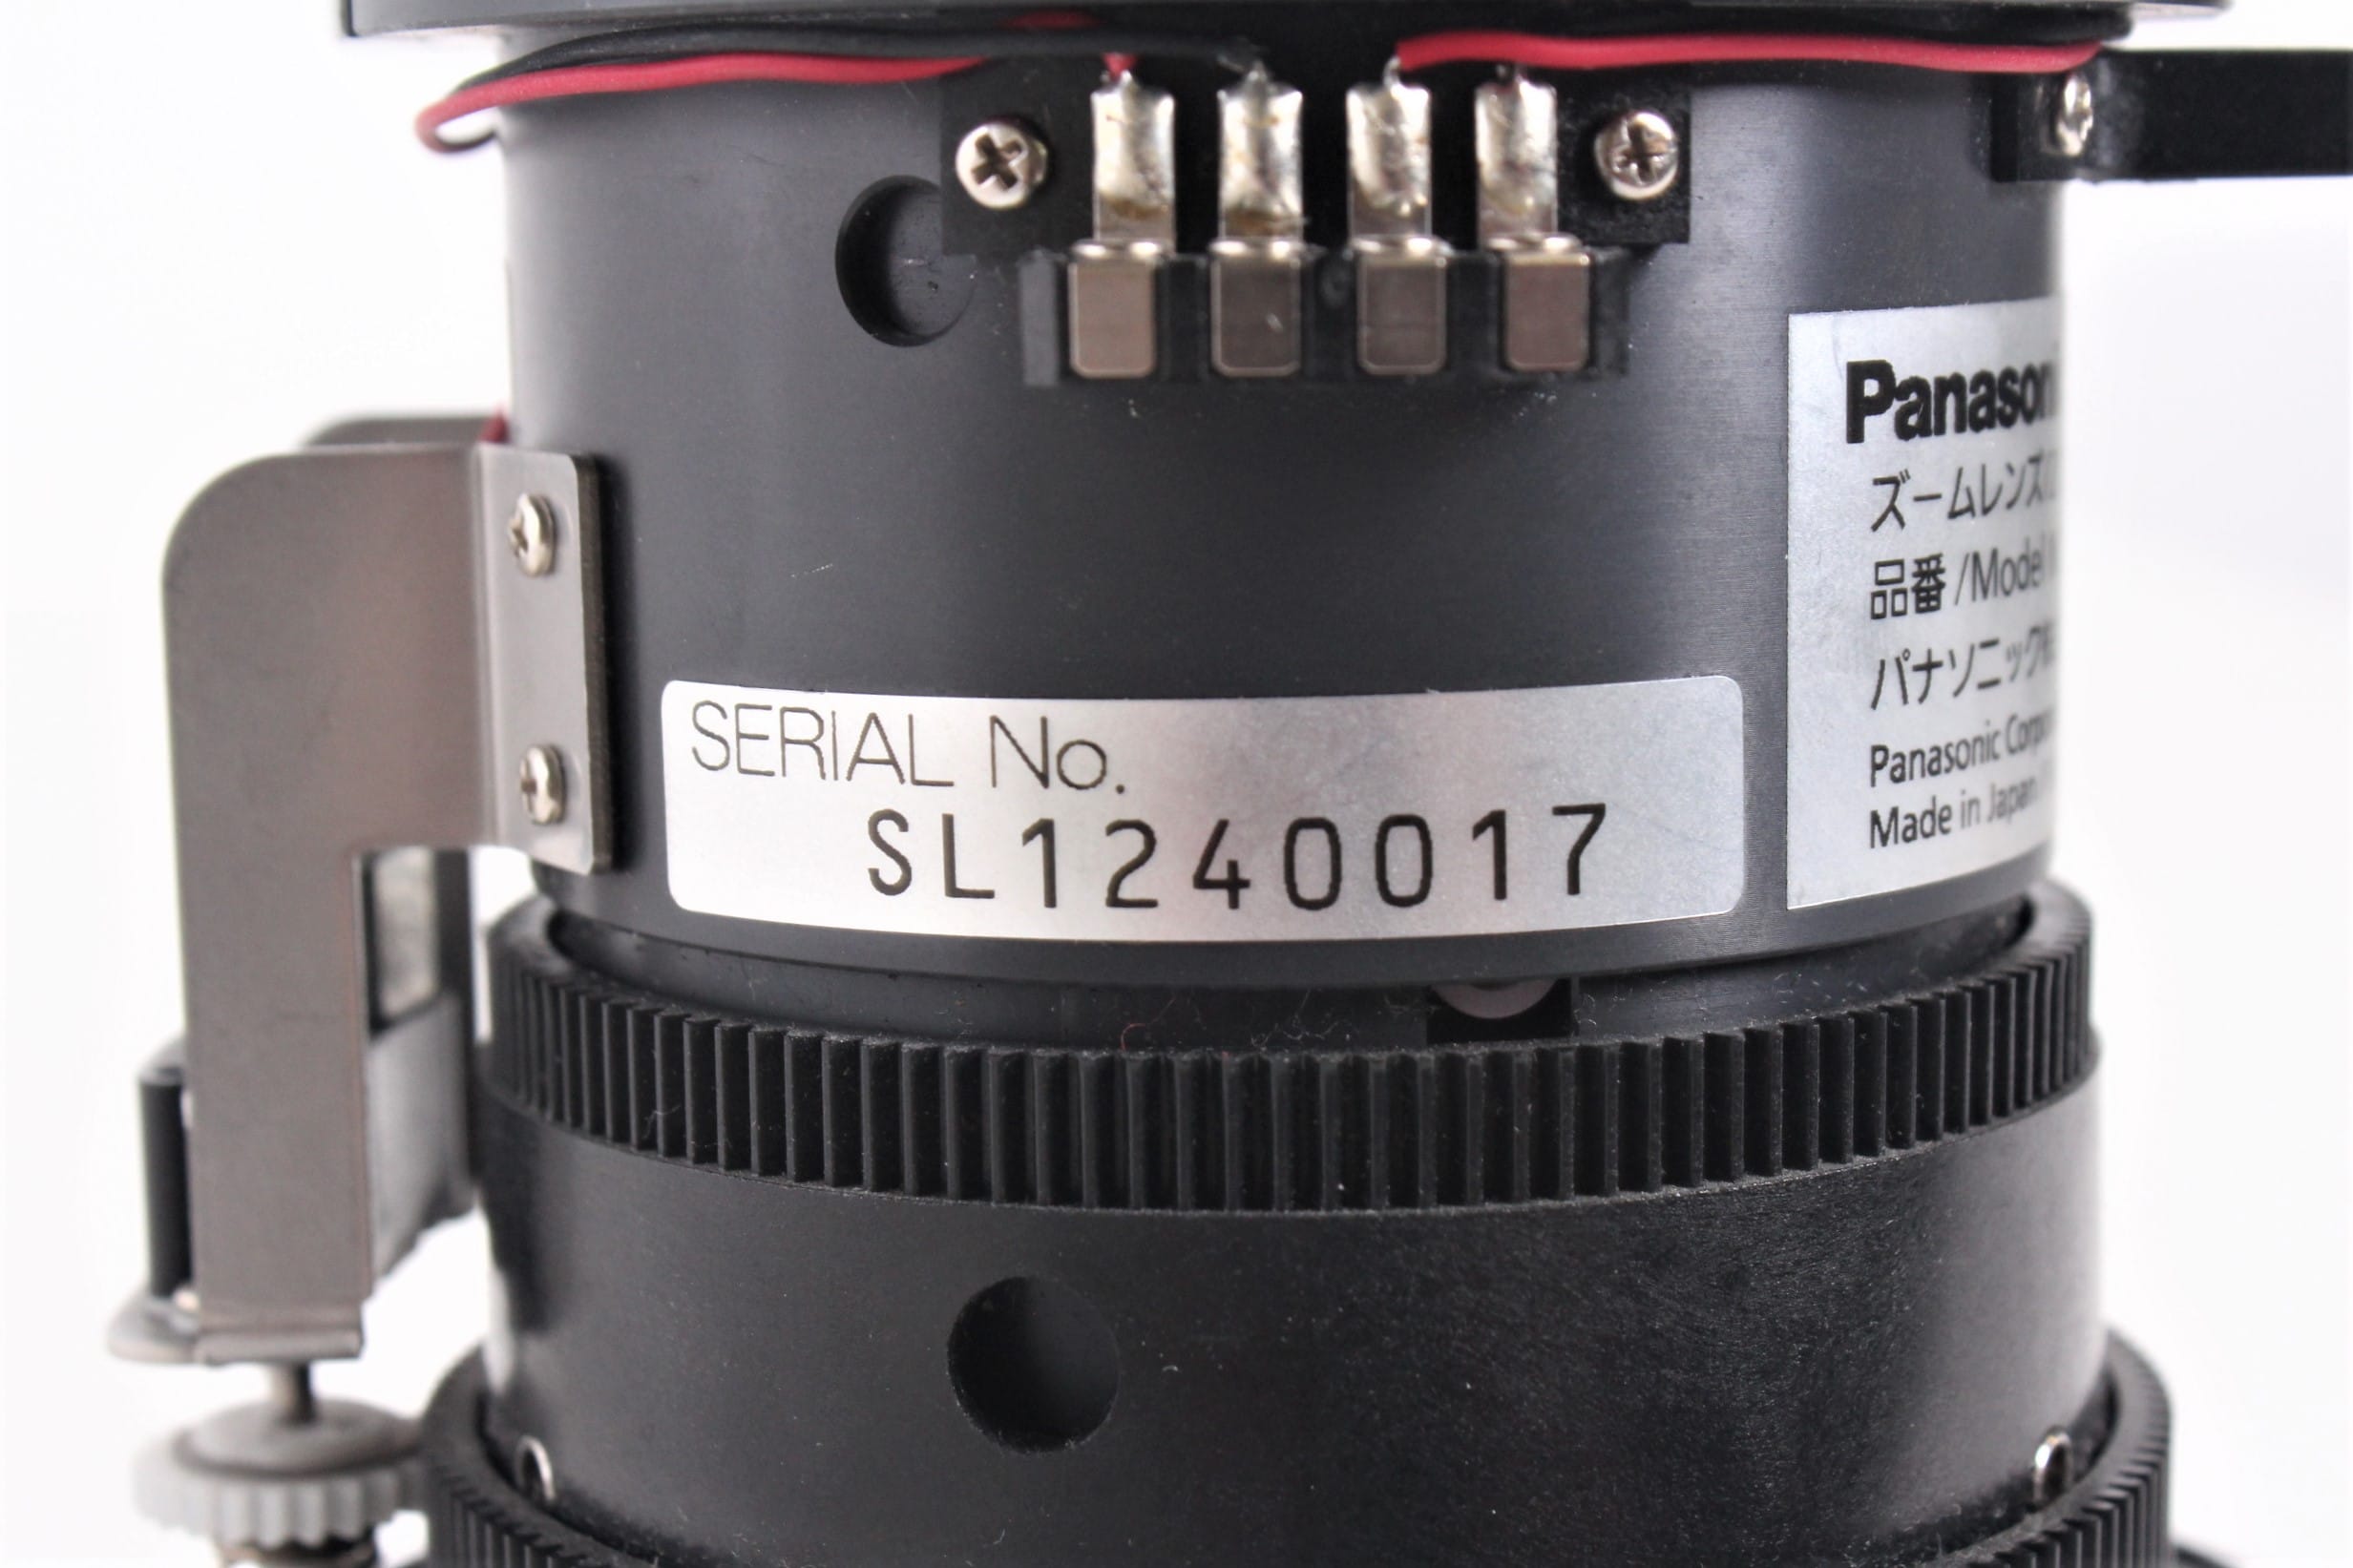 Panasonic ET-DLE150 Short Throw Projector Lens 1.3-1.8:1 DLP Projectors